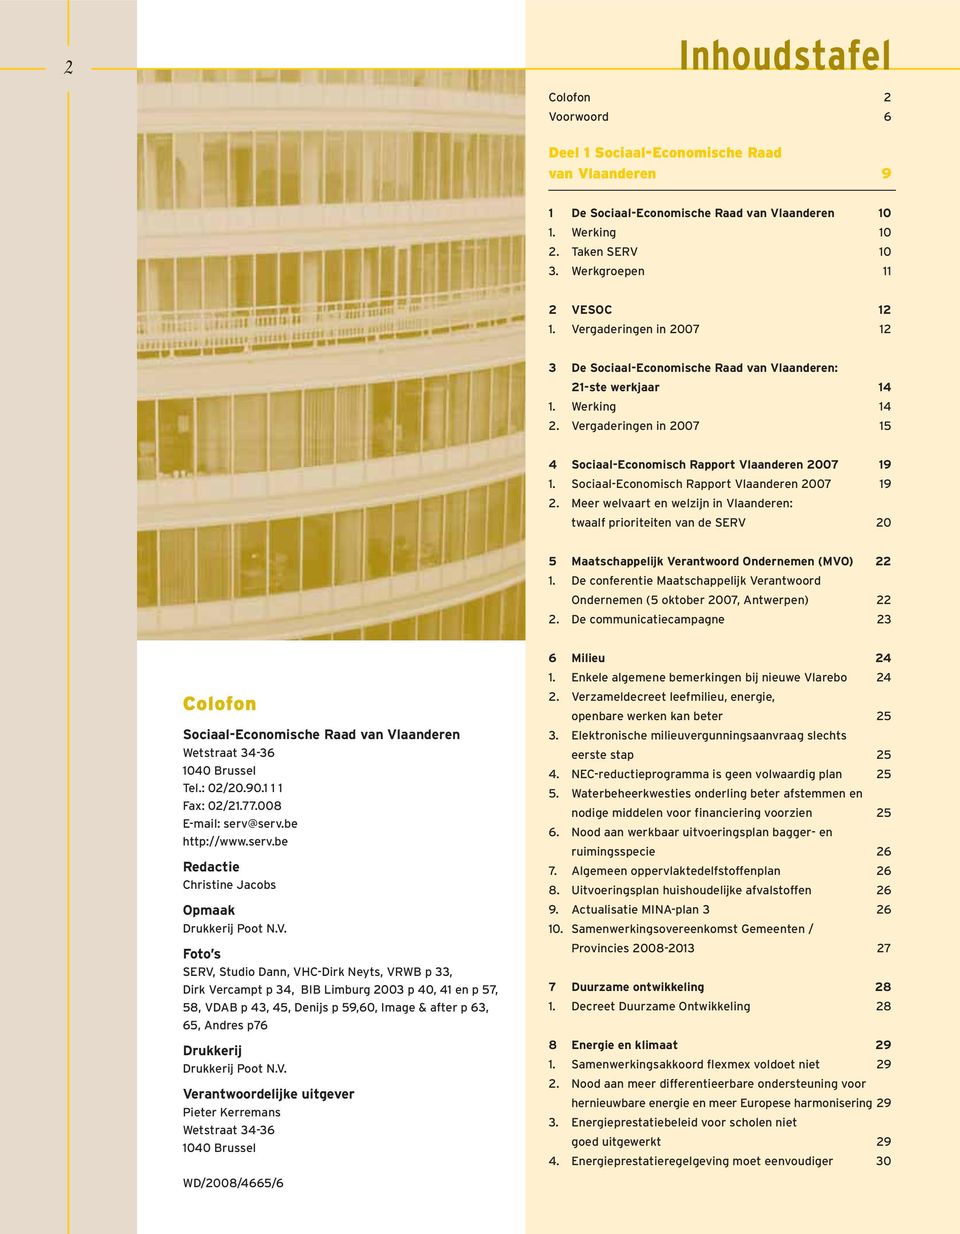 Sociaal-Economisch Rapport Vlaanderen 2007 19 2. Meer welvaart en welzijn in Vlaanderen: twaalf prioriteiten van de SERV 20 5 Maatschappelijk Verantwoord Ondernemen (MVO) 22 1.